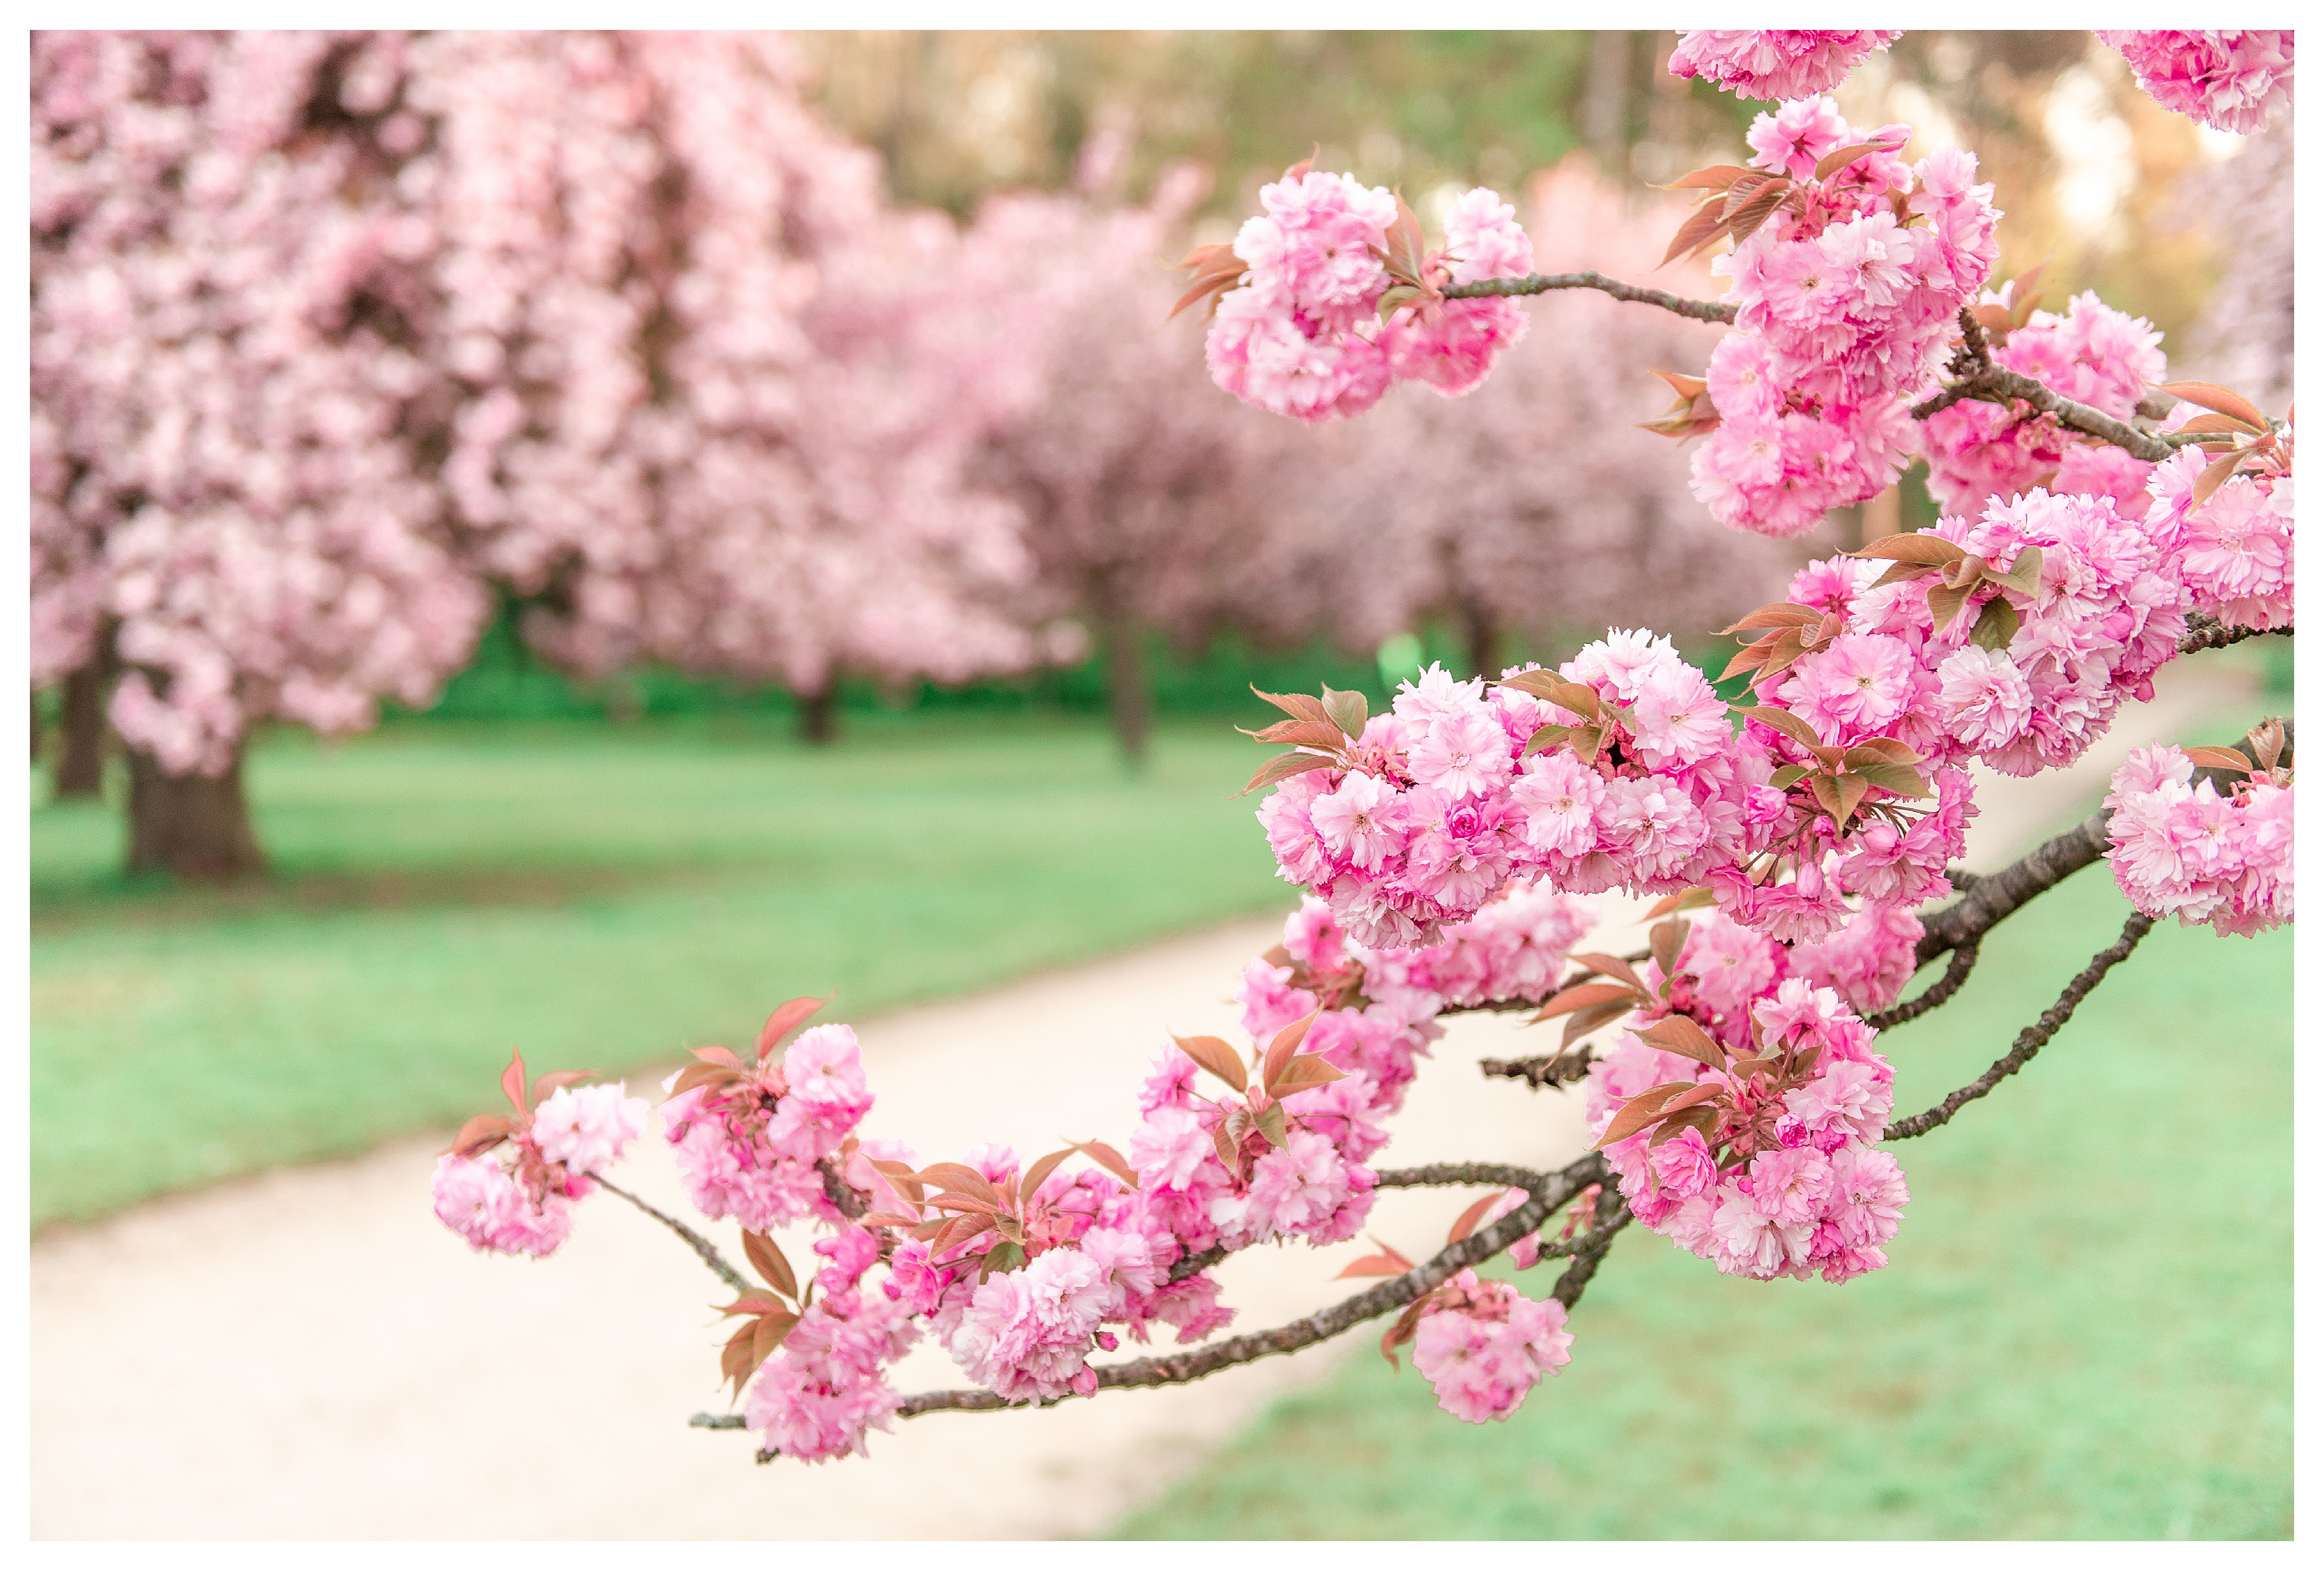 pink cherry blossoms in the parc de sceaux